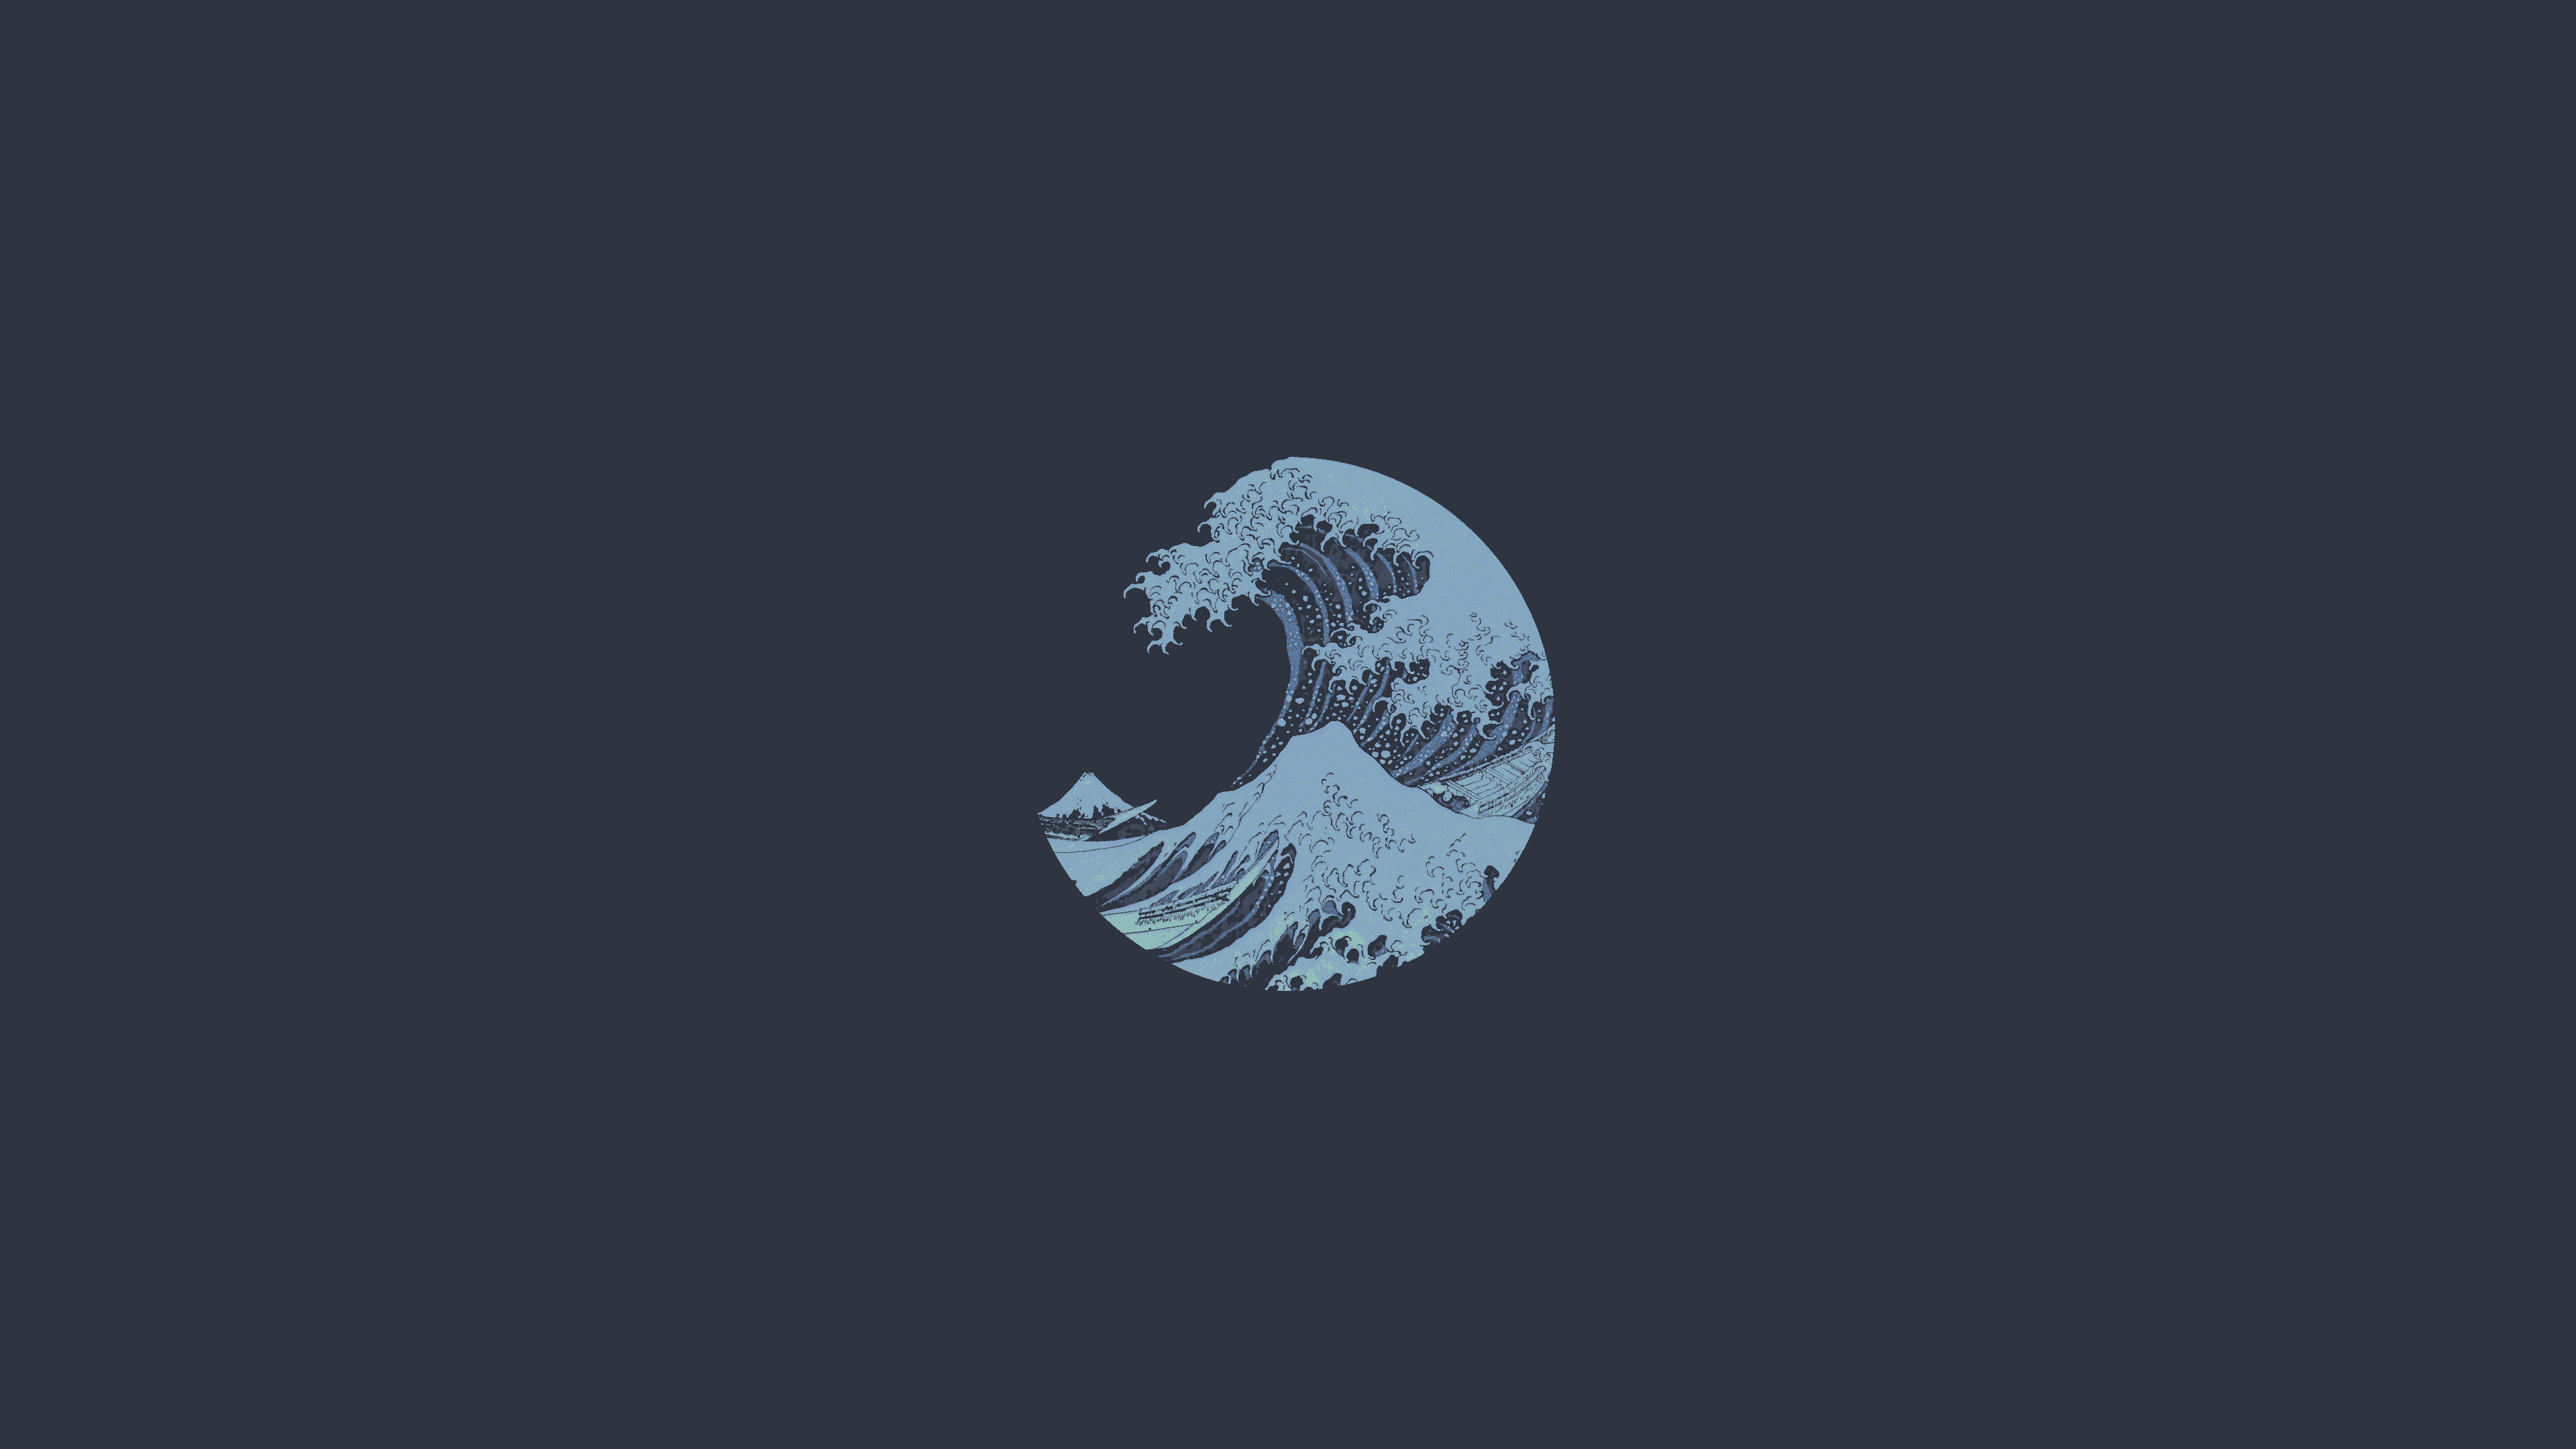 The Great Wave Off Kanagawa Minimalism Digital Artwork Digital Art Blue Waves 3840x2160